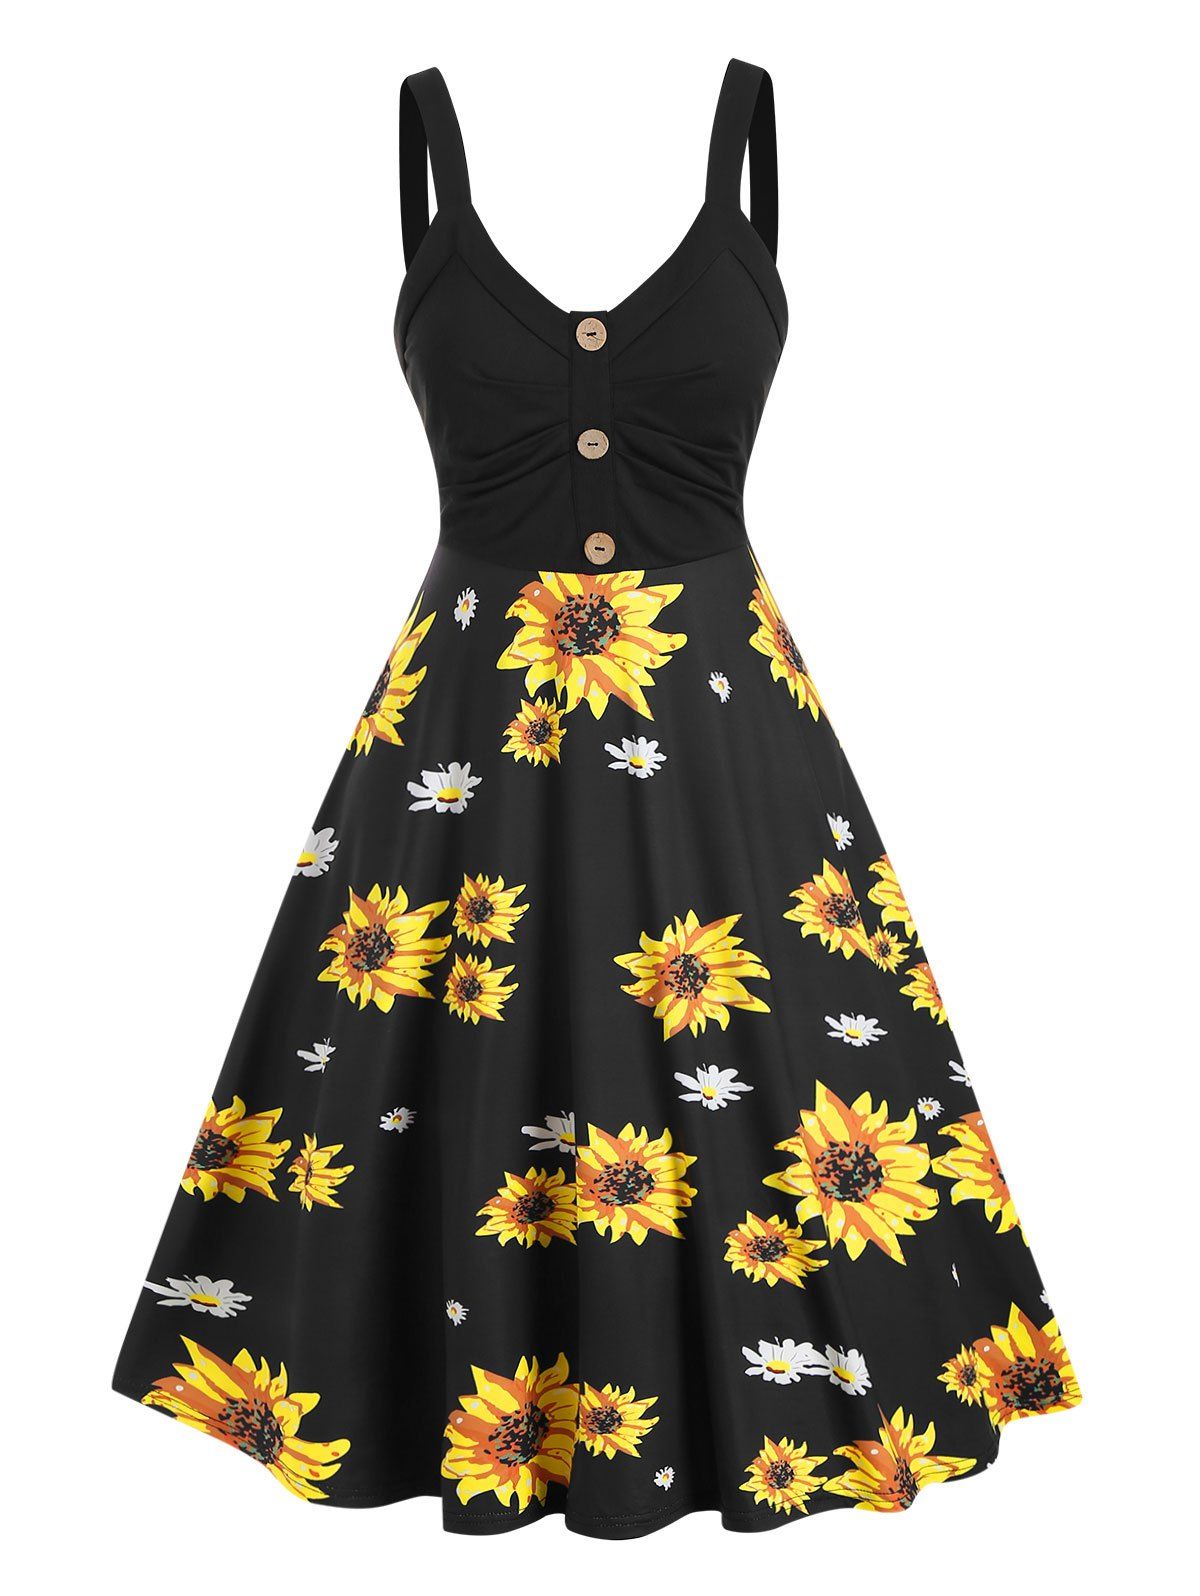 Summer Sunflower Print Sundress Mock Button High Waist Cami Dress - multicolor M